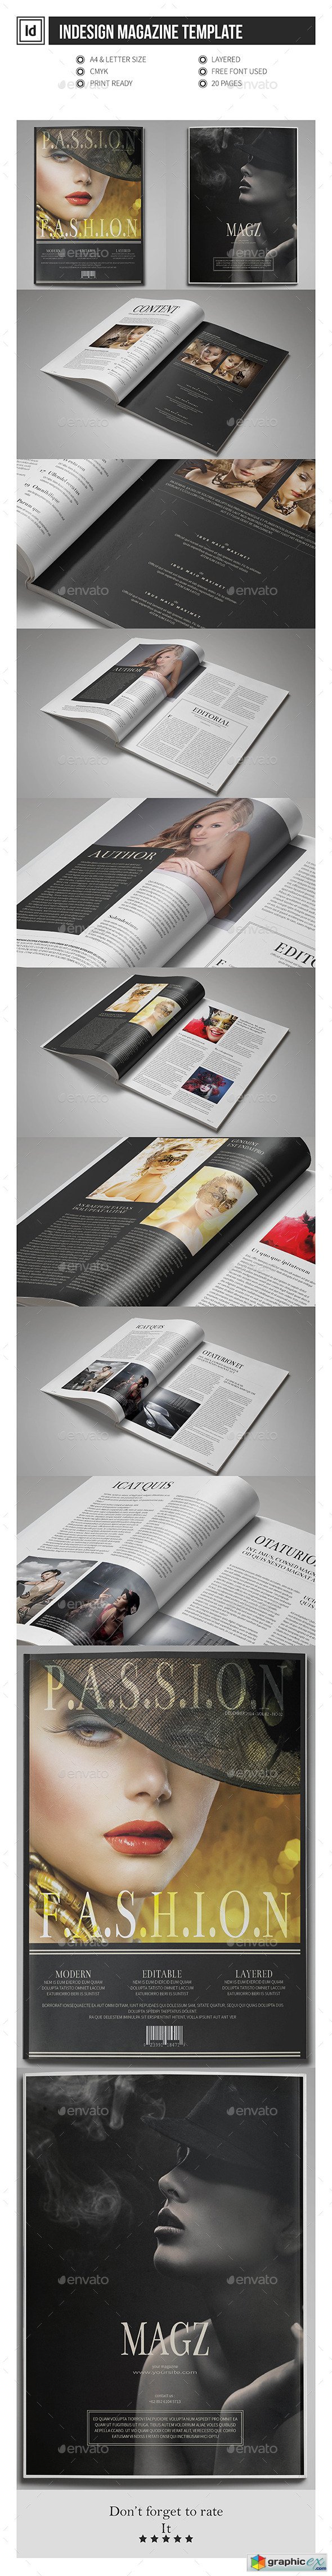 Multipurpose InDesign Magazine Template